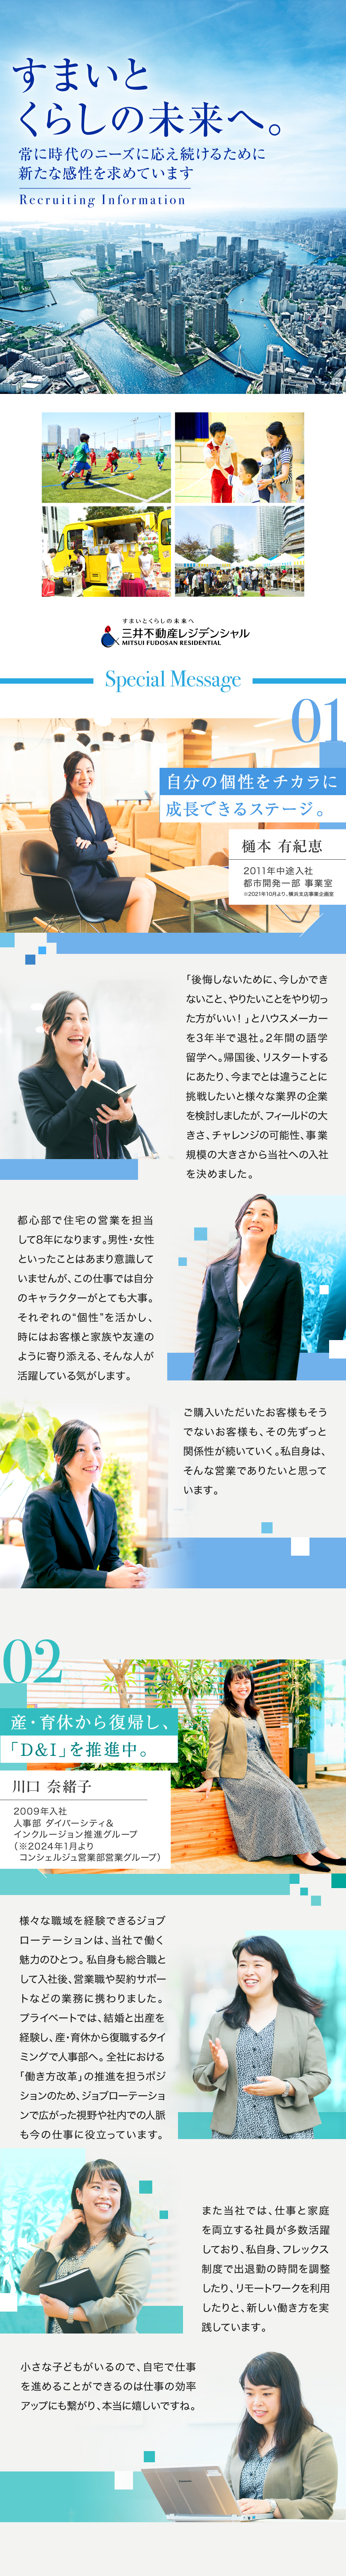 三井不動産レジデンシャル株式会社からのメッセージ